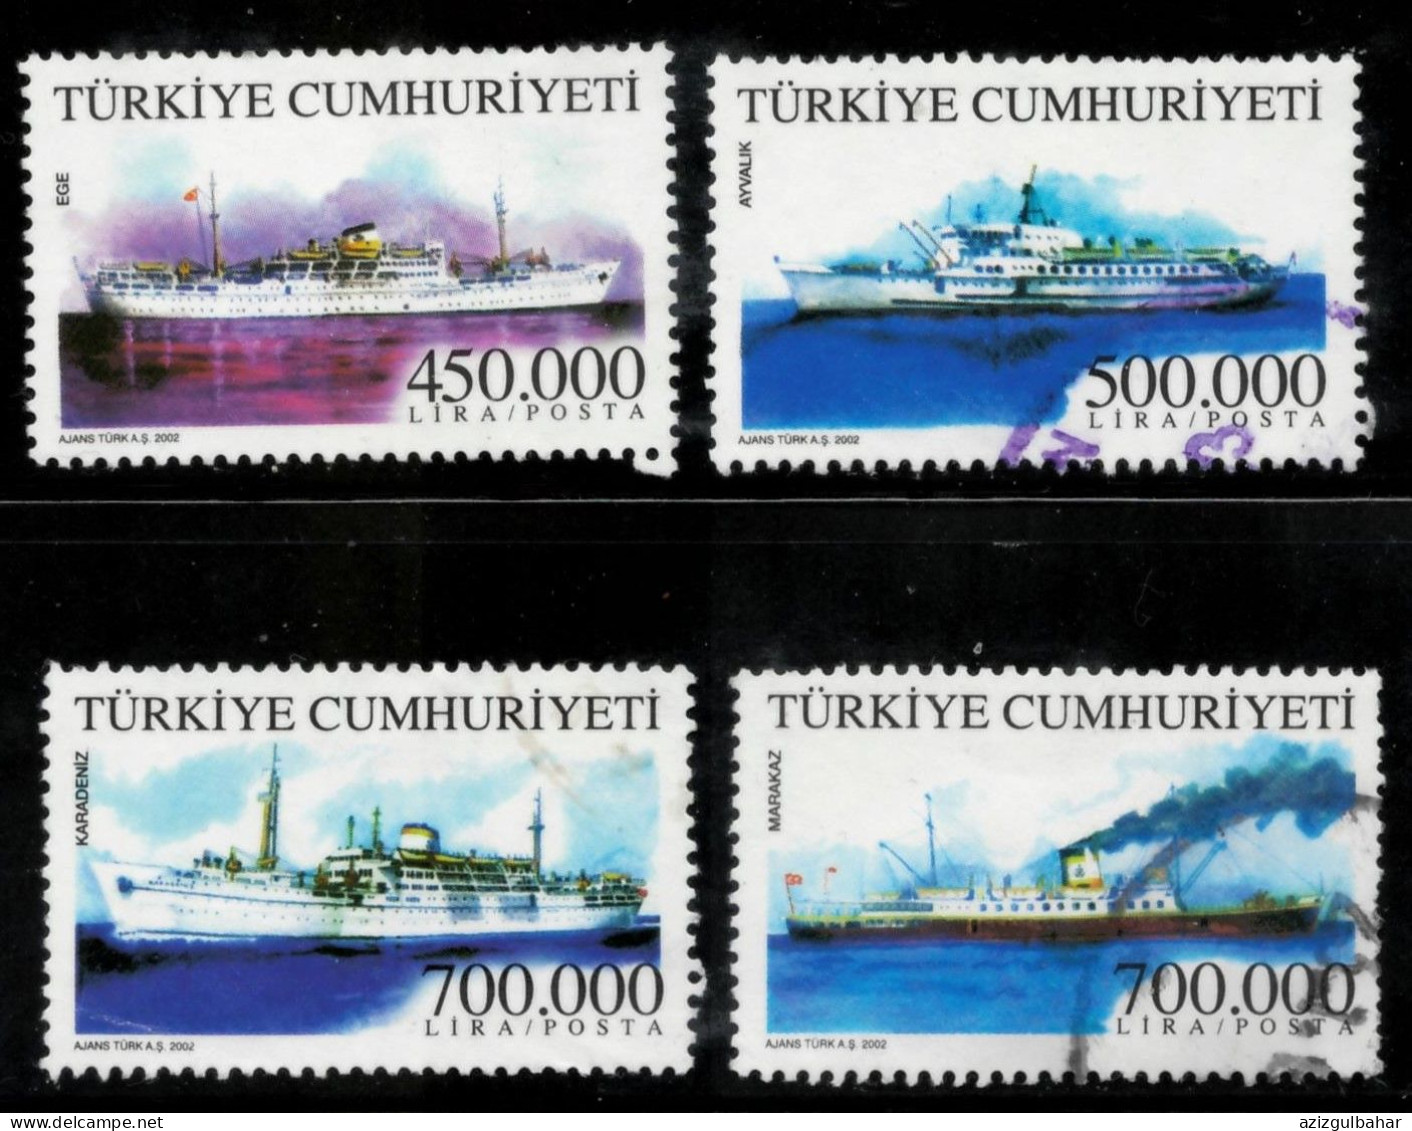 TURKEY 2002 -  USED - TURKISH MERCHANT SHIPS - Oblitérés